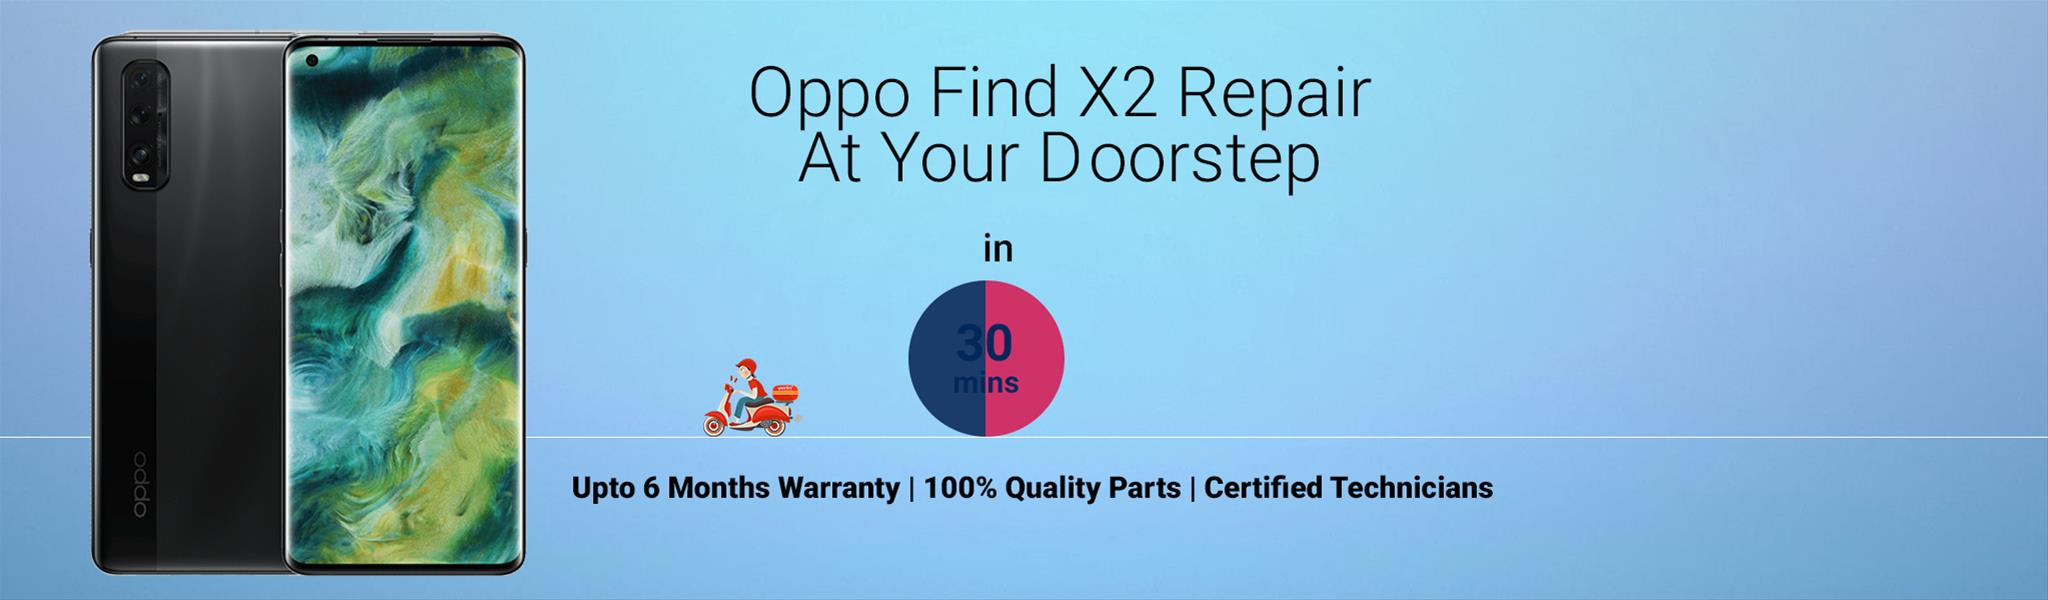 oppo-Find-x2-repair.jpg